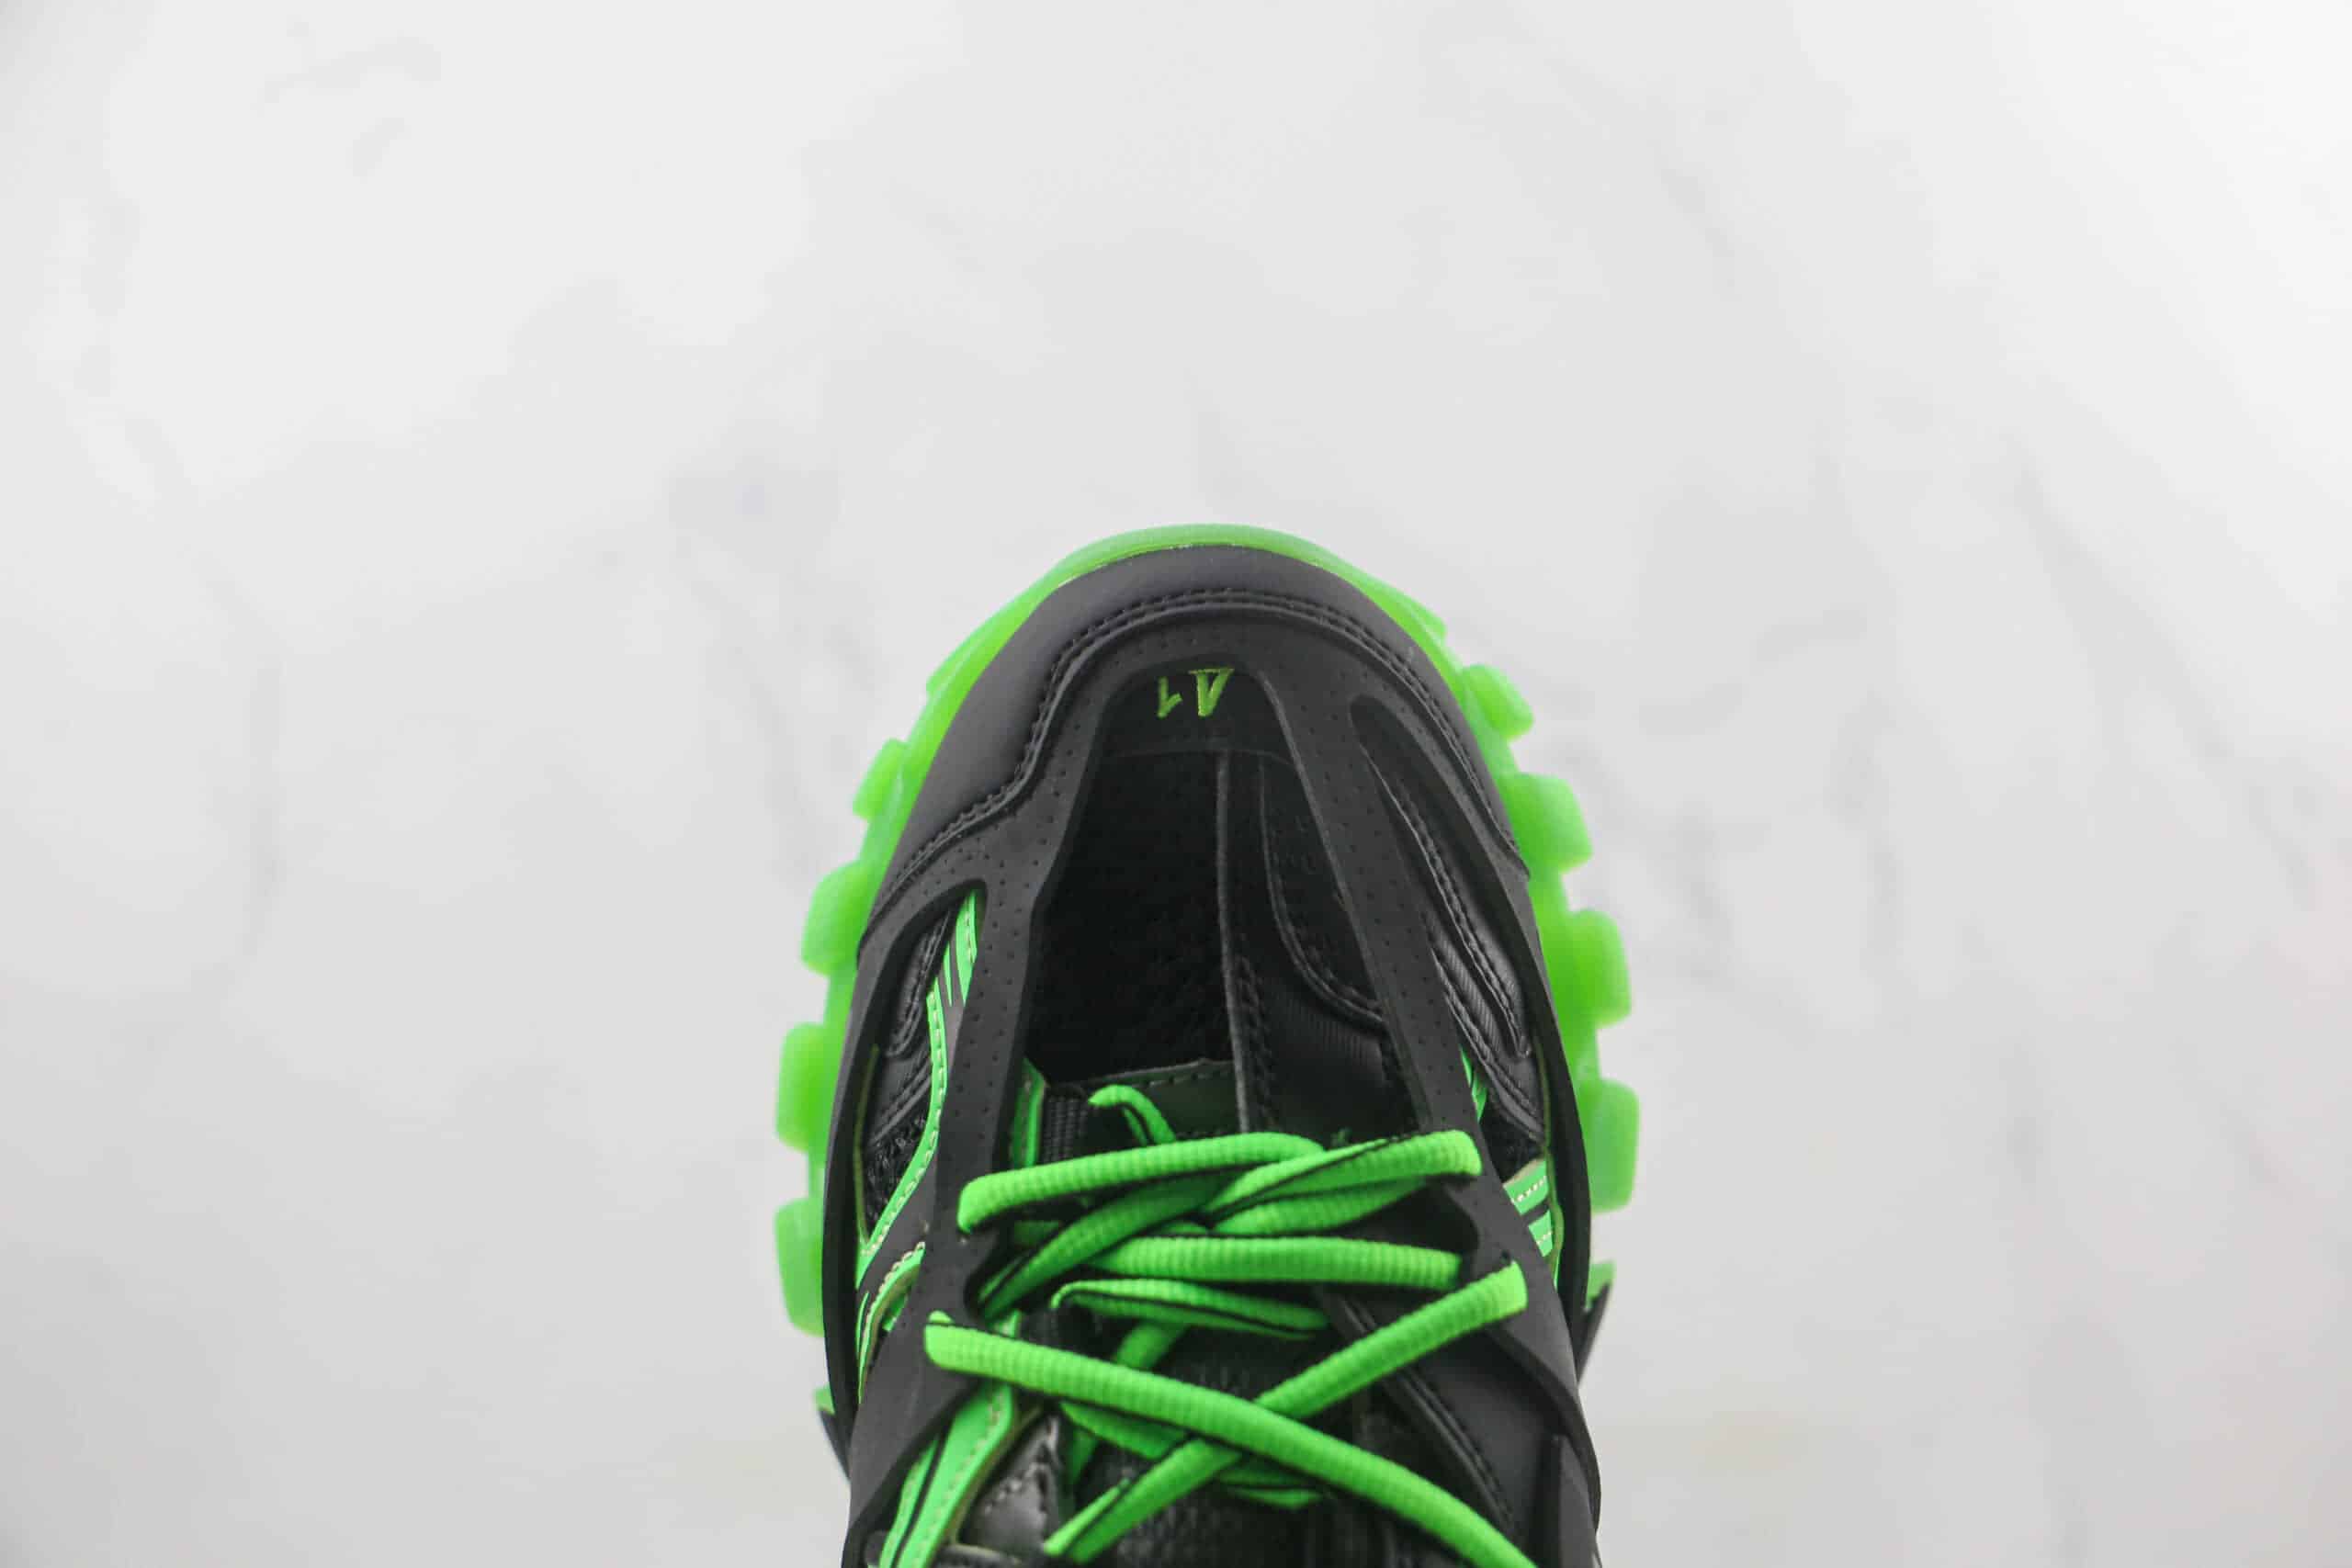 巴黎世家Balenciaga Track Mule Clear Sole Sneakers 3.0复刻三代复古老爹鞋黑绿色 - 莞产巴黎世家, 巴黎世家三代, 复古老爹鞋, Sneakers